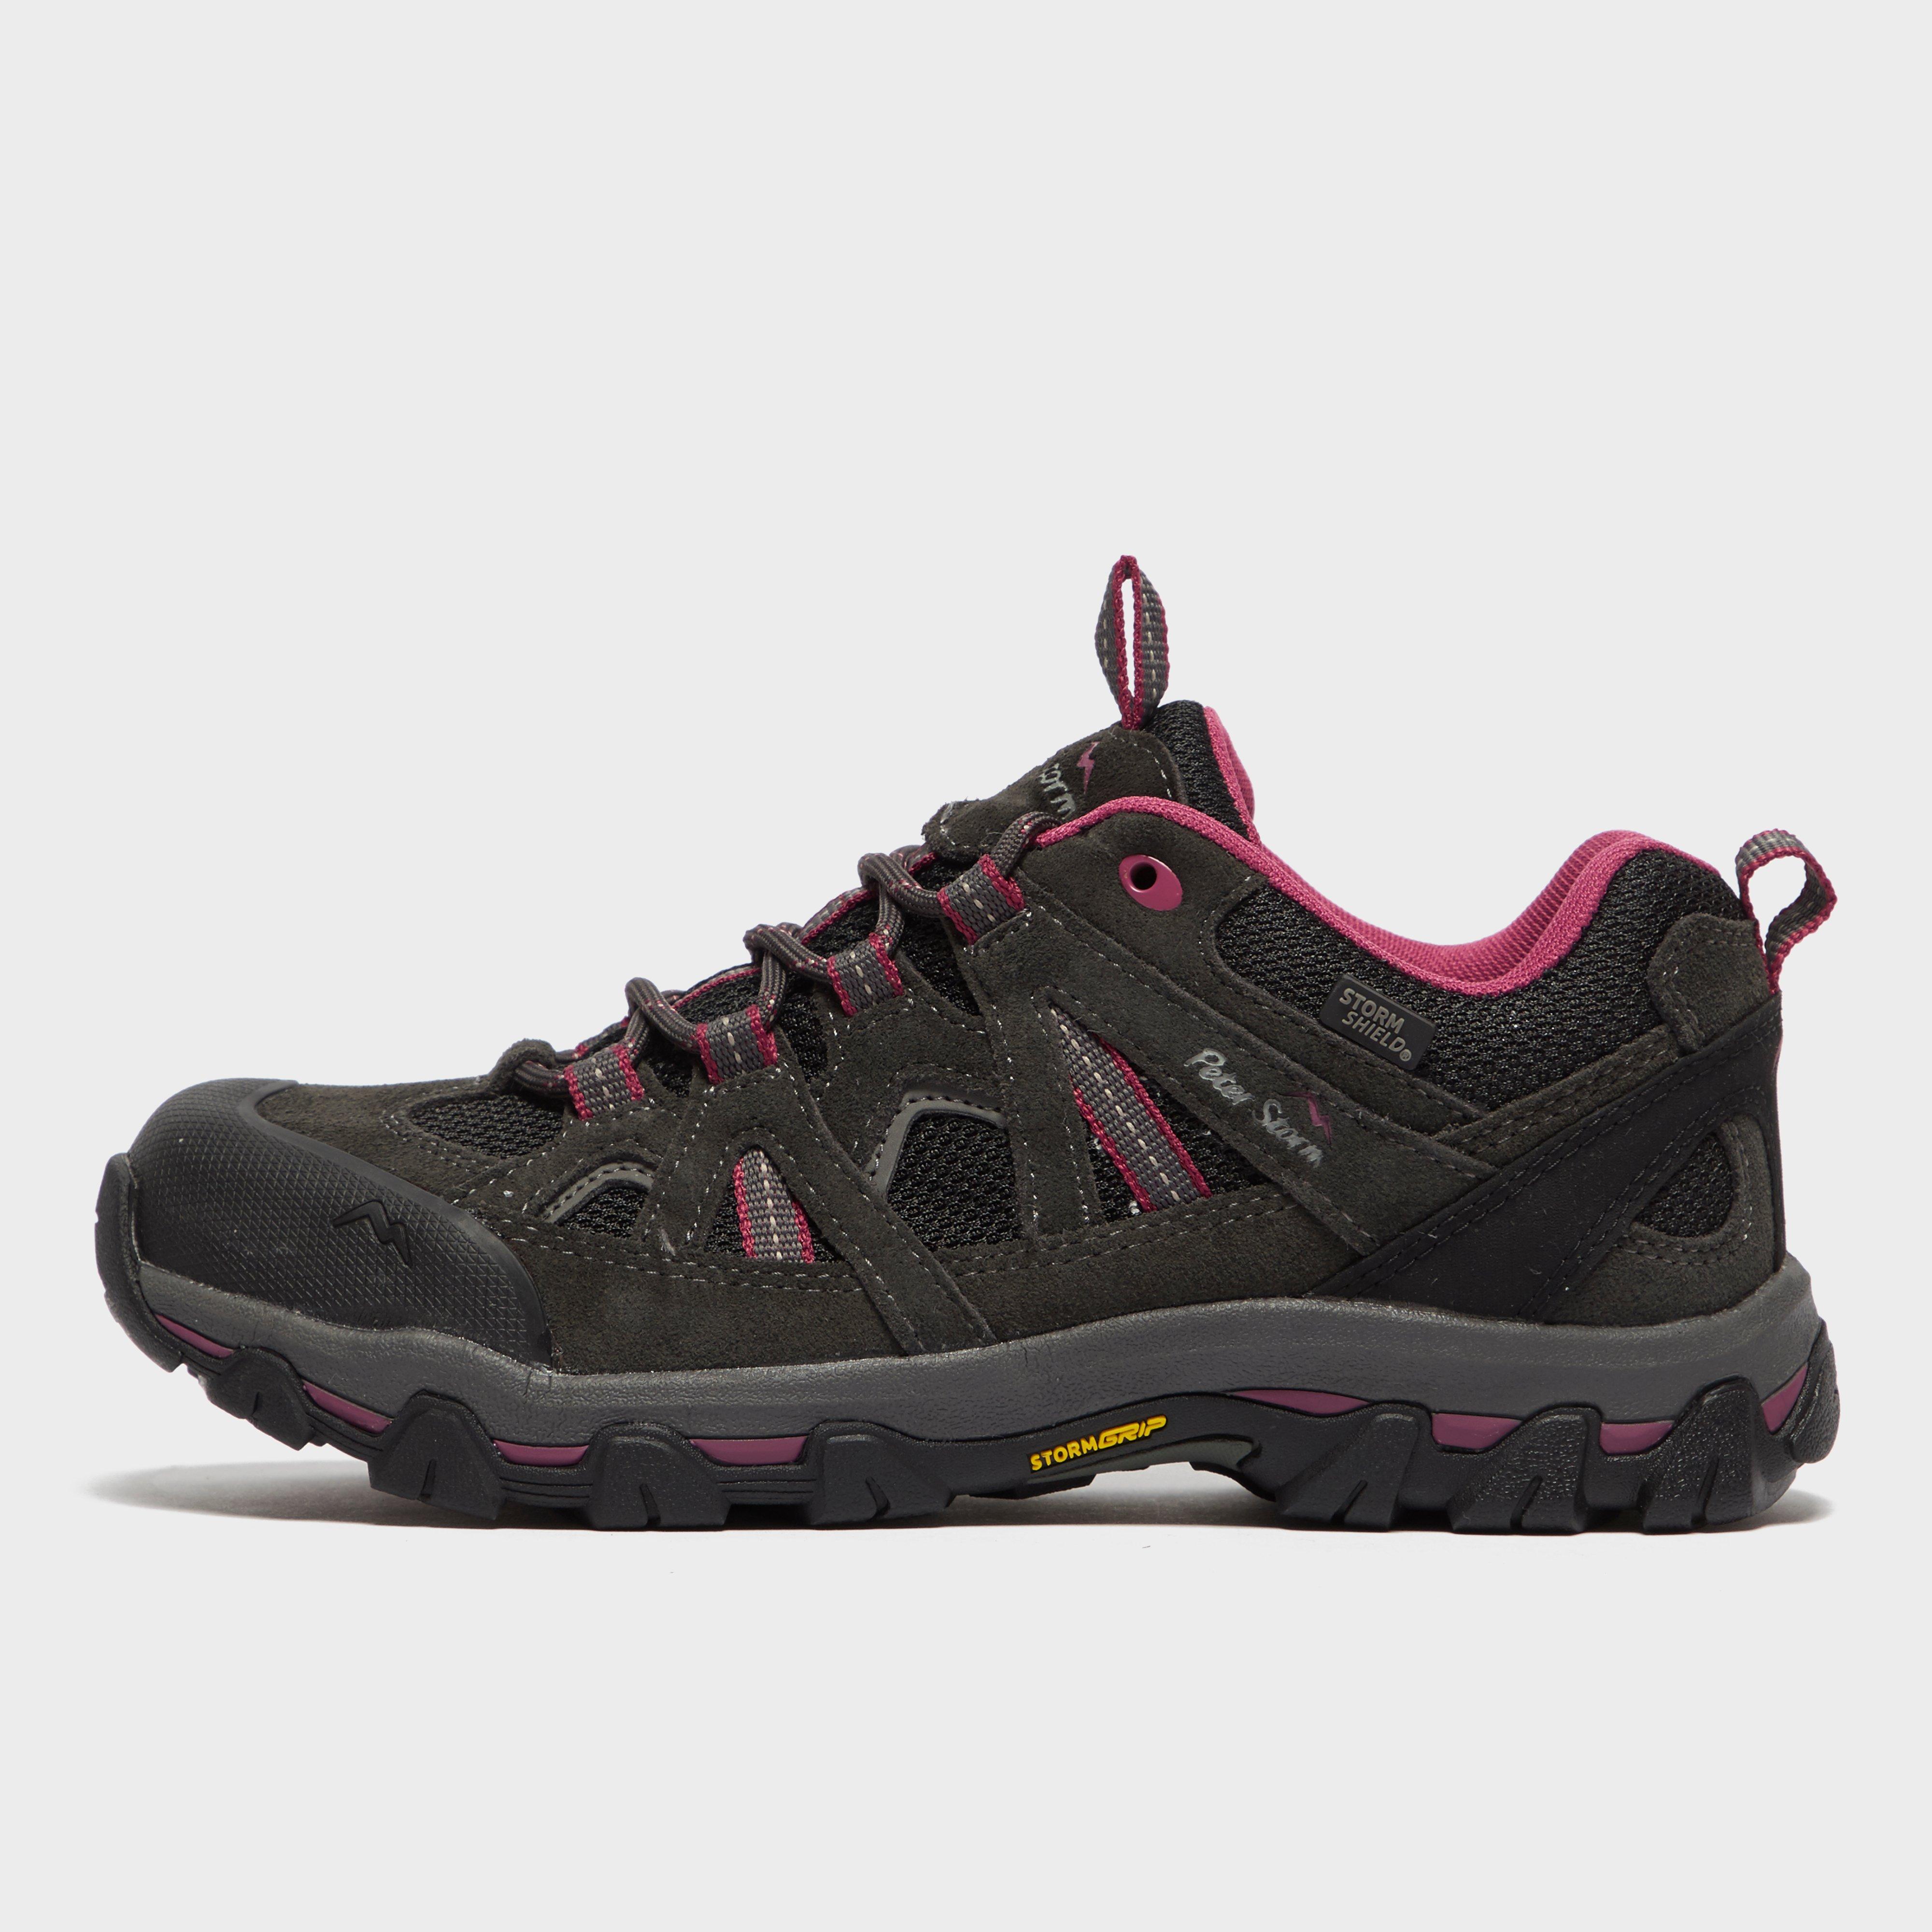 New Peter Storm Women’s Buxton Walking Shoe 